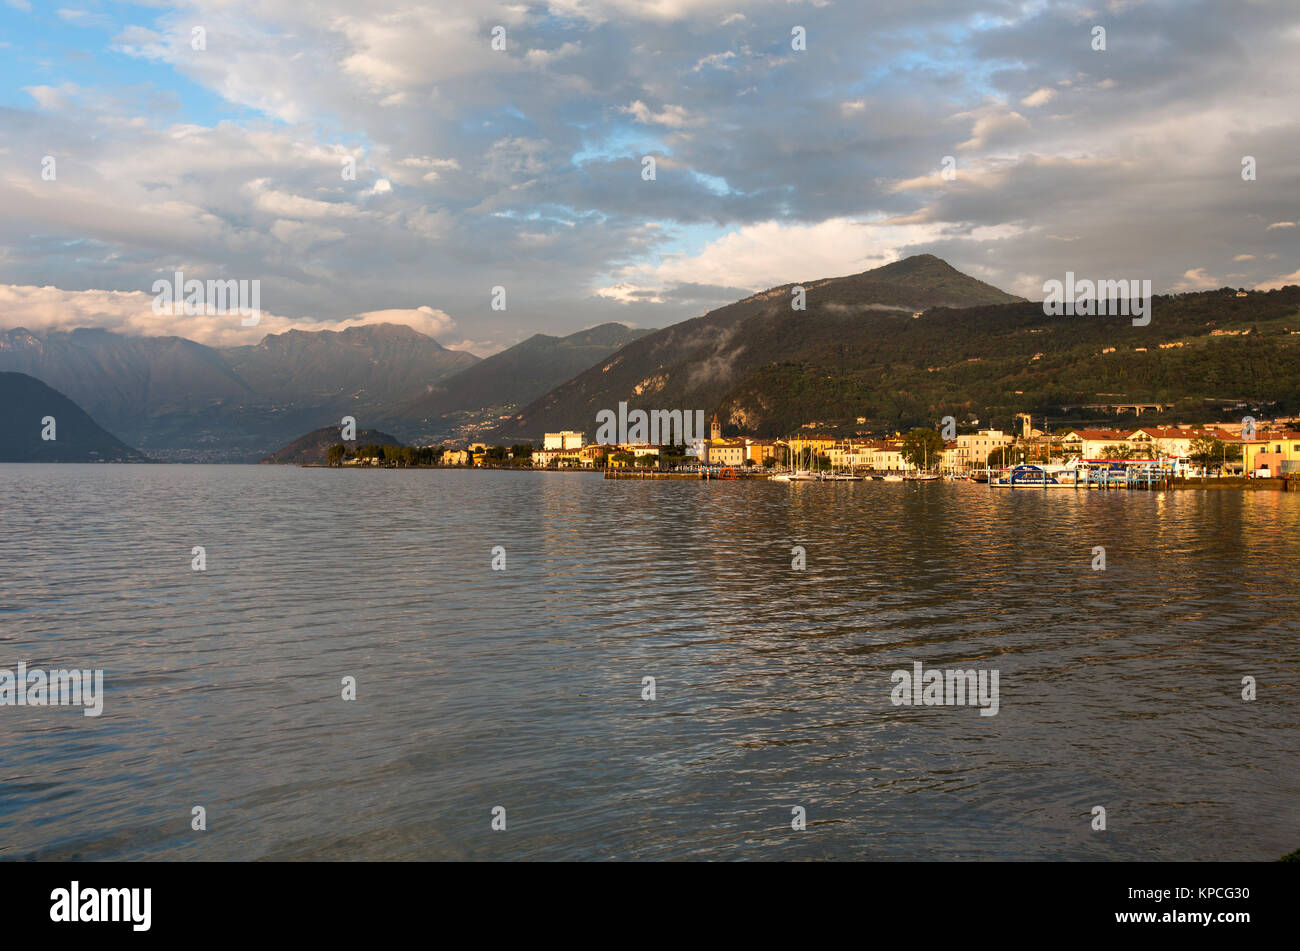 El lago de Iseo, Italia. Anochecer pintorescas vistas del lago de Iseo, y la ciudad de Iseo. La escena fue tomada mirando hacia el este desde la costa sur del lago Foto de stock